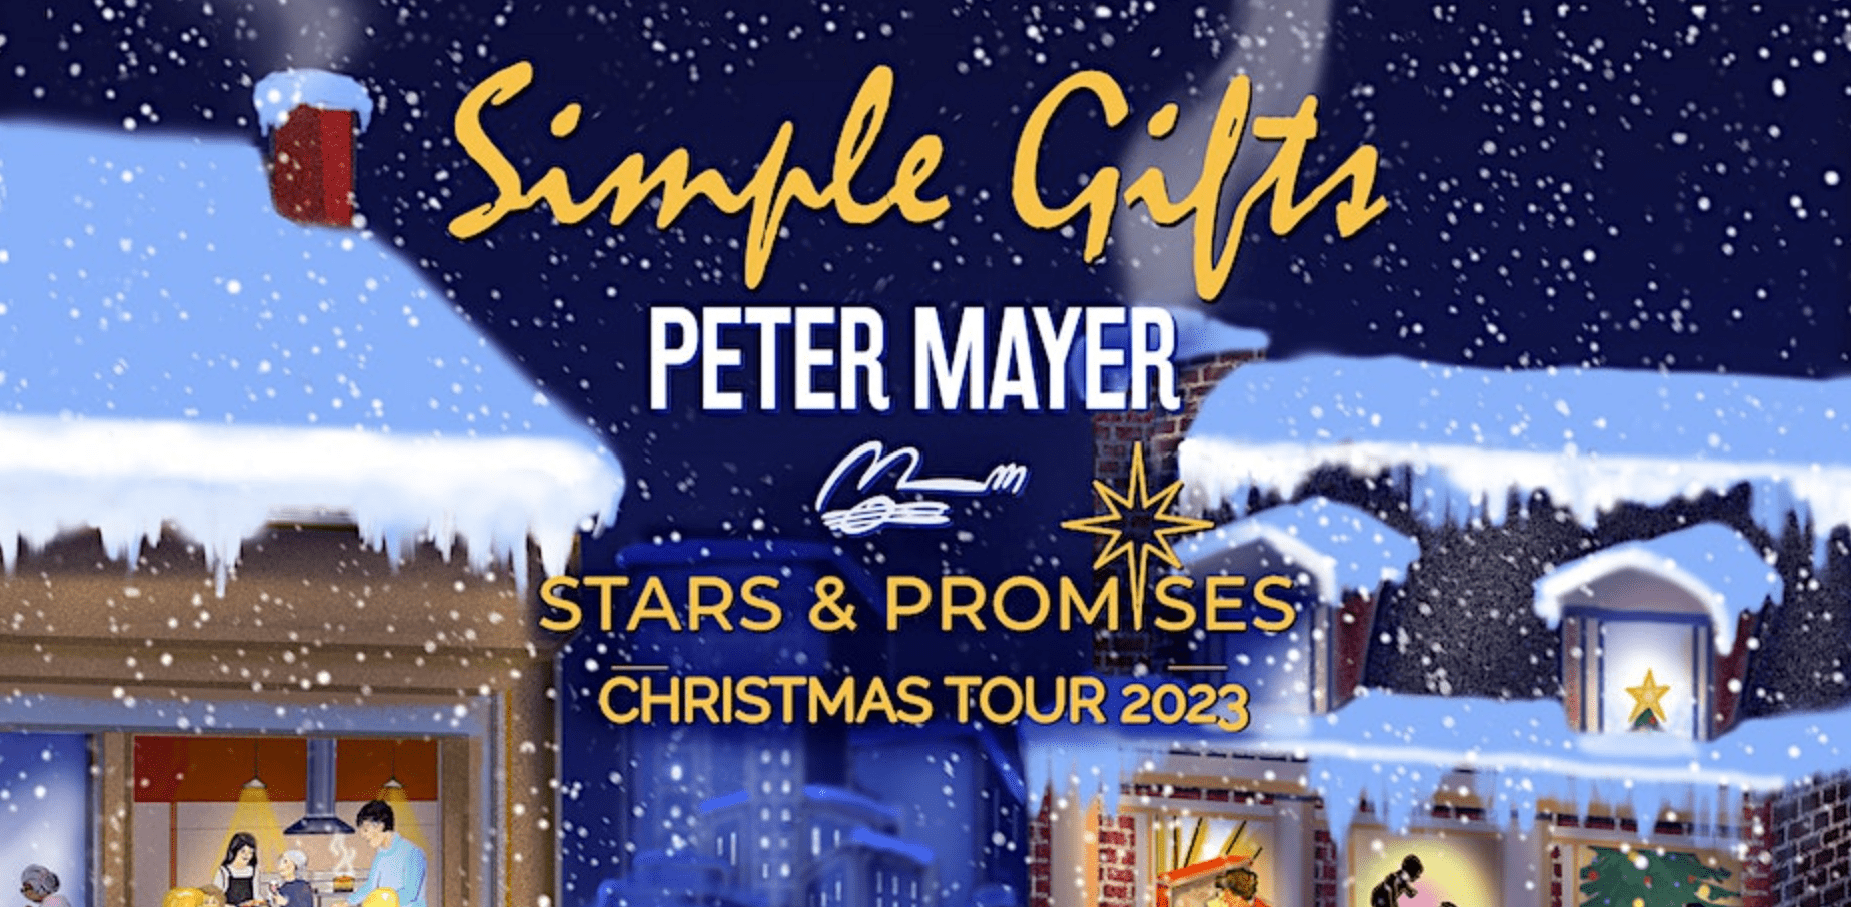 Peter Mayer Benefit Concert & Nonprofit Showcase